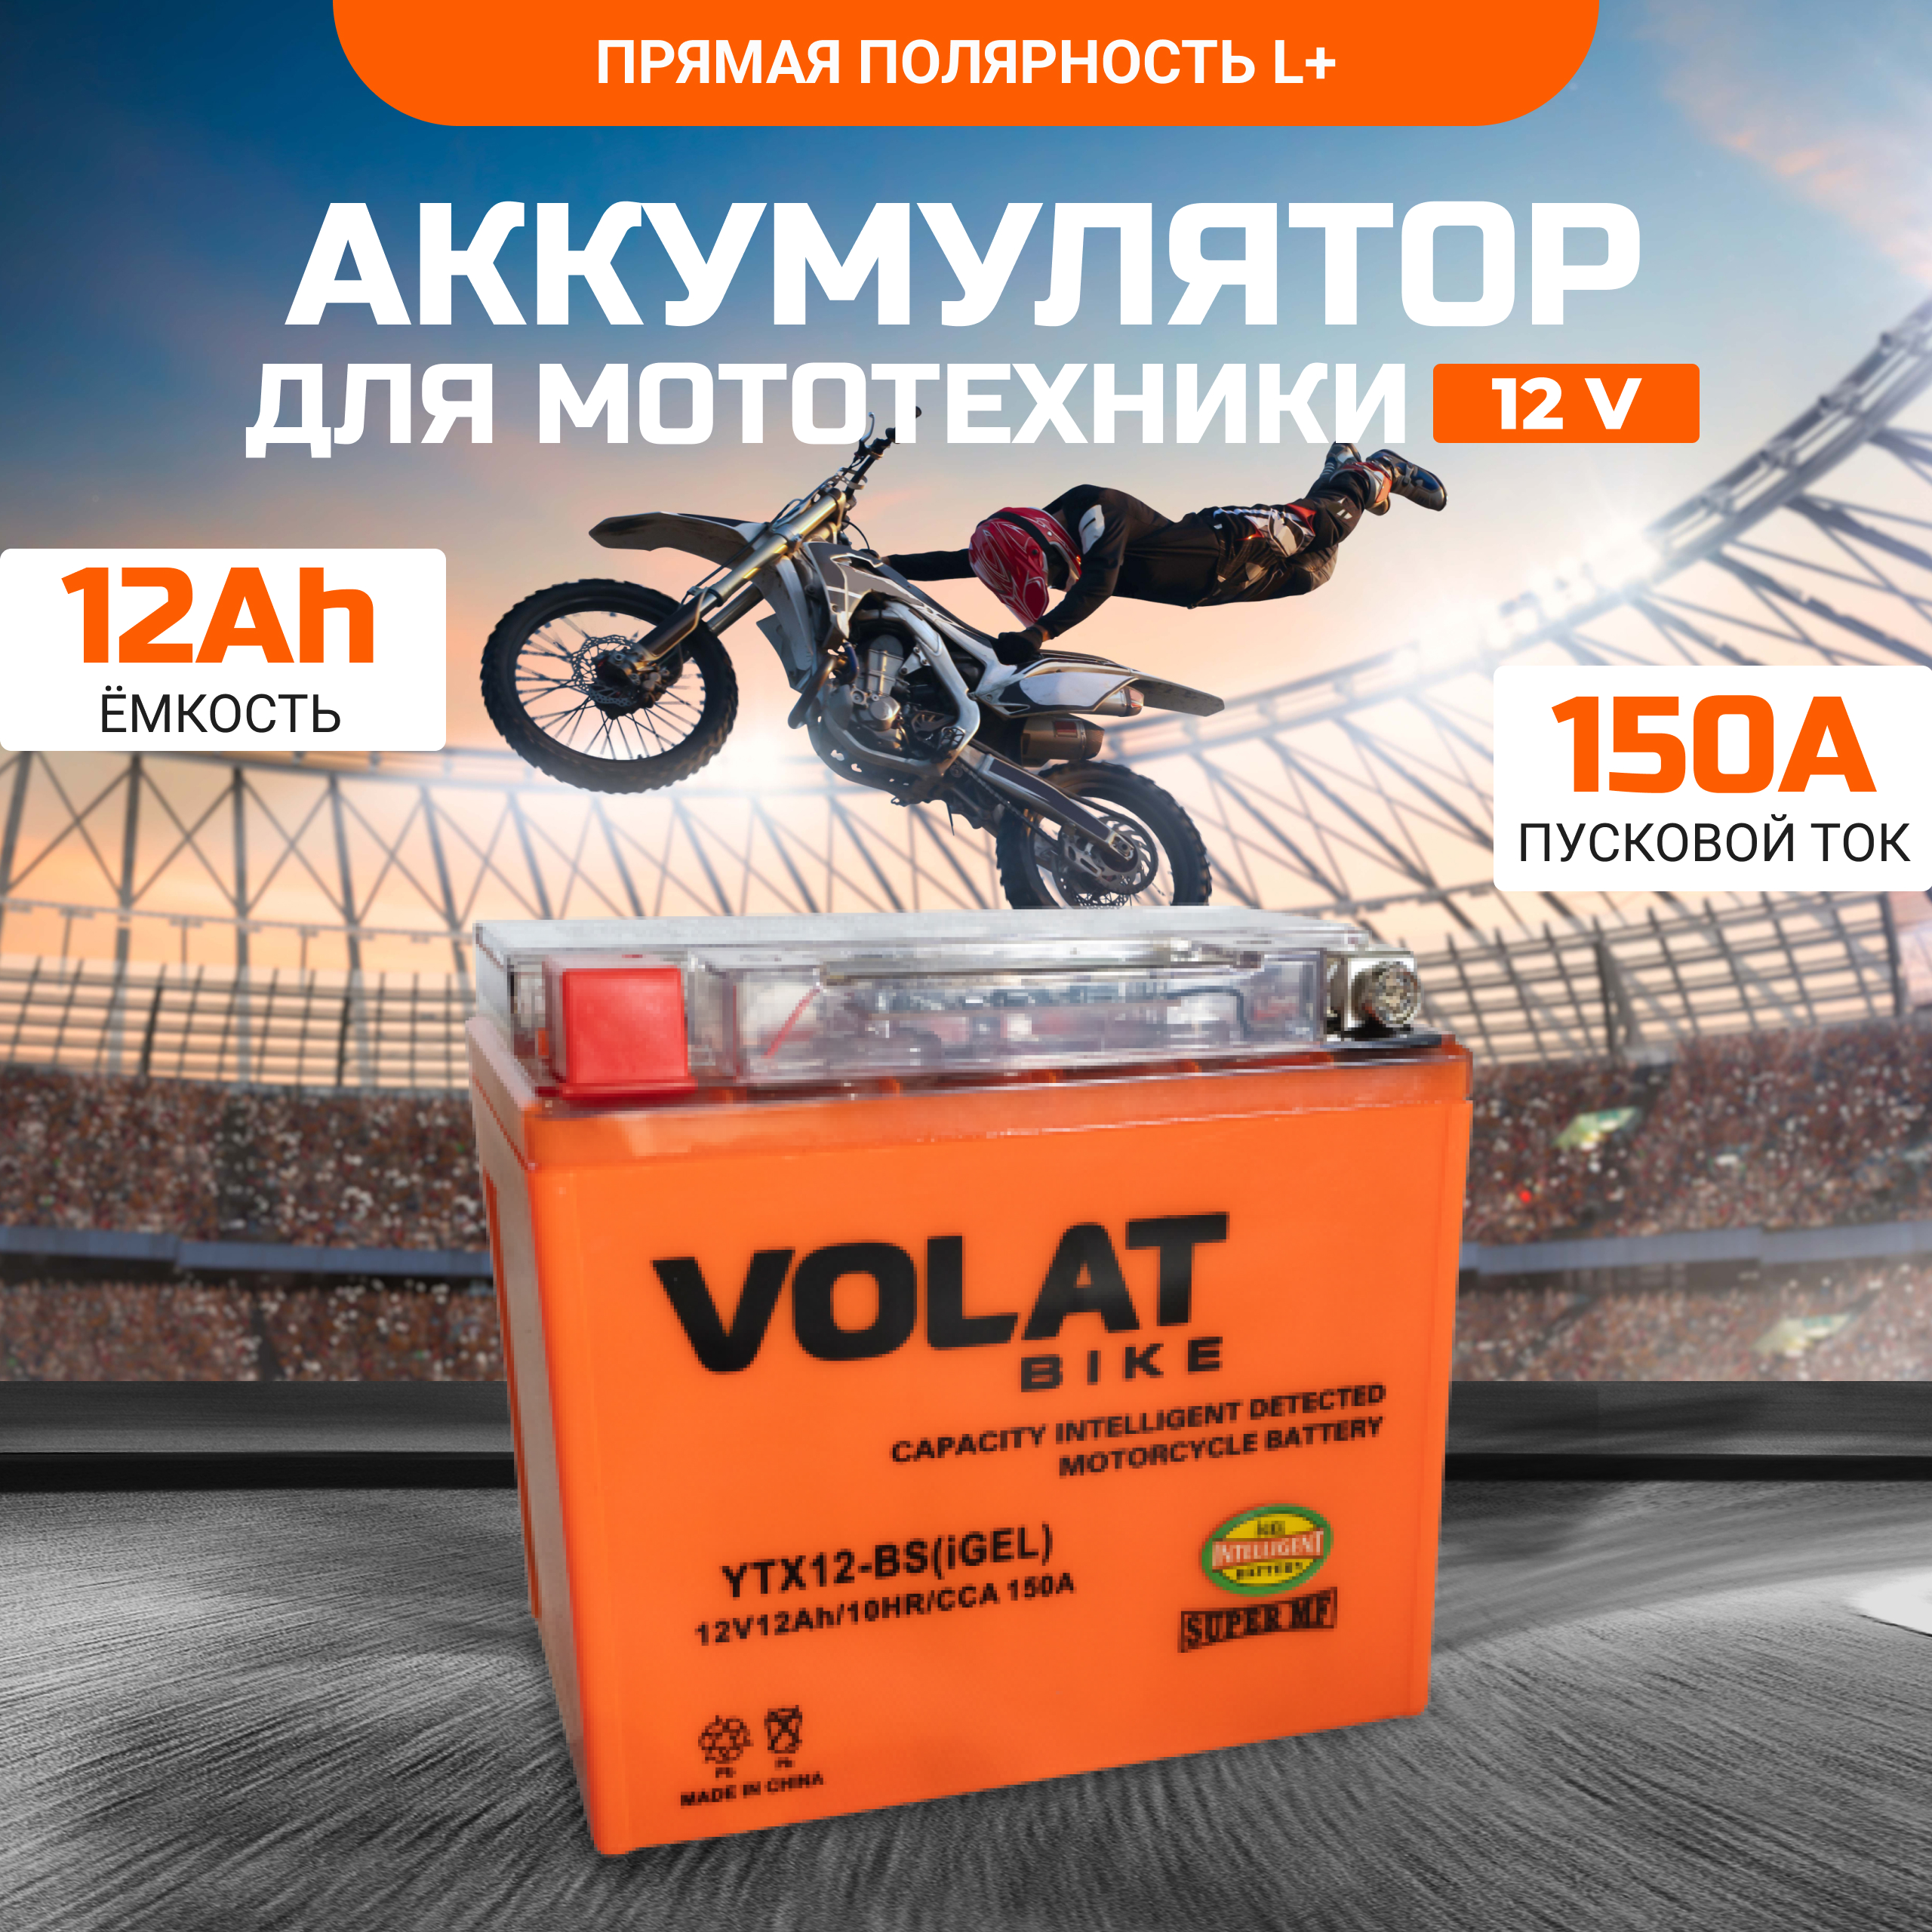 Аккумулятор для мотоцикла VOLAT 12в гелевый 12 Ah 150 A прямая полярность YTX12-BS(iGEL)